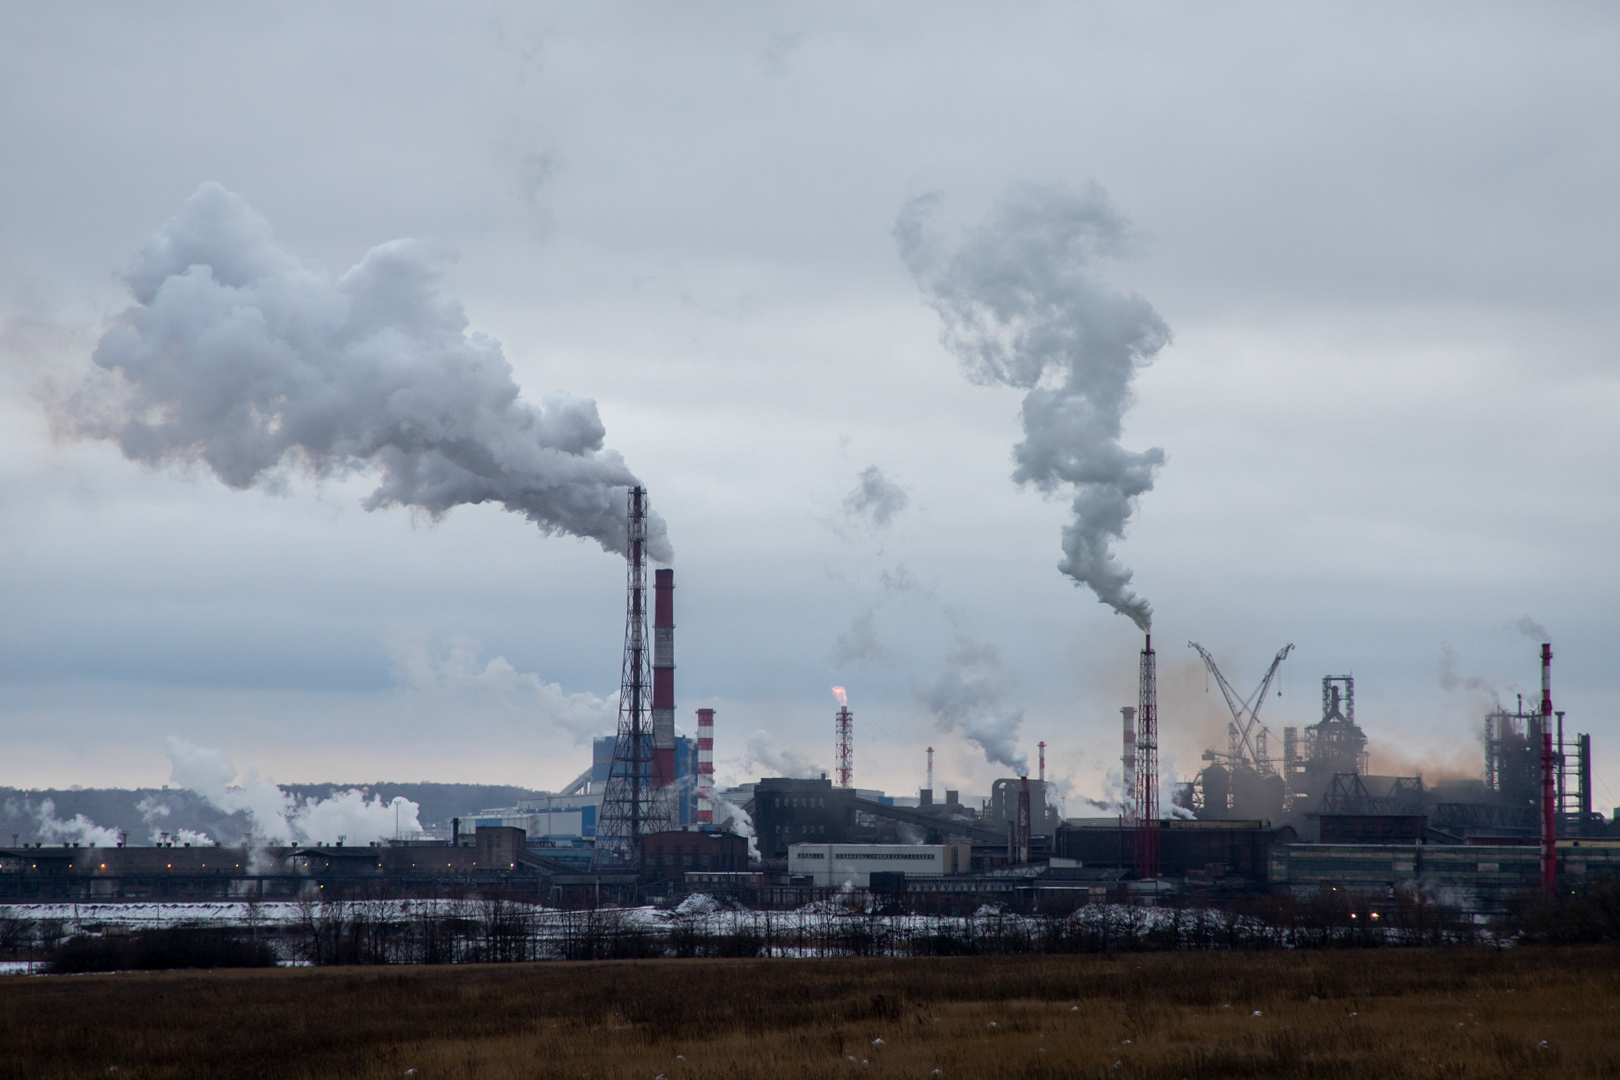 В Тульской области работают девять постов наблюдения за выбросами предприятий